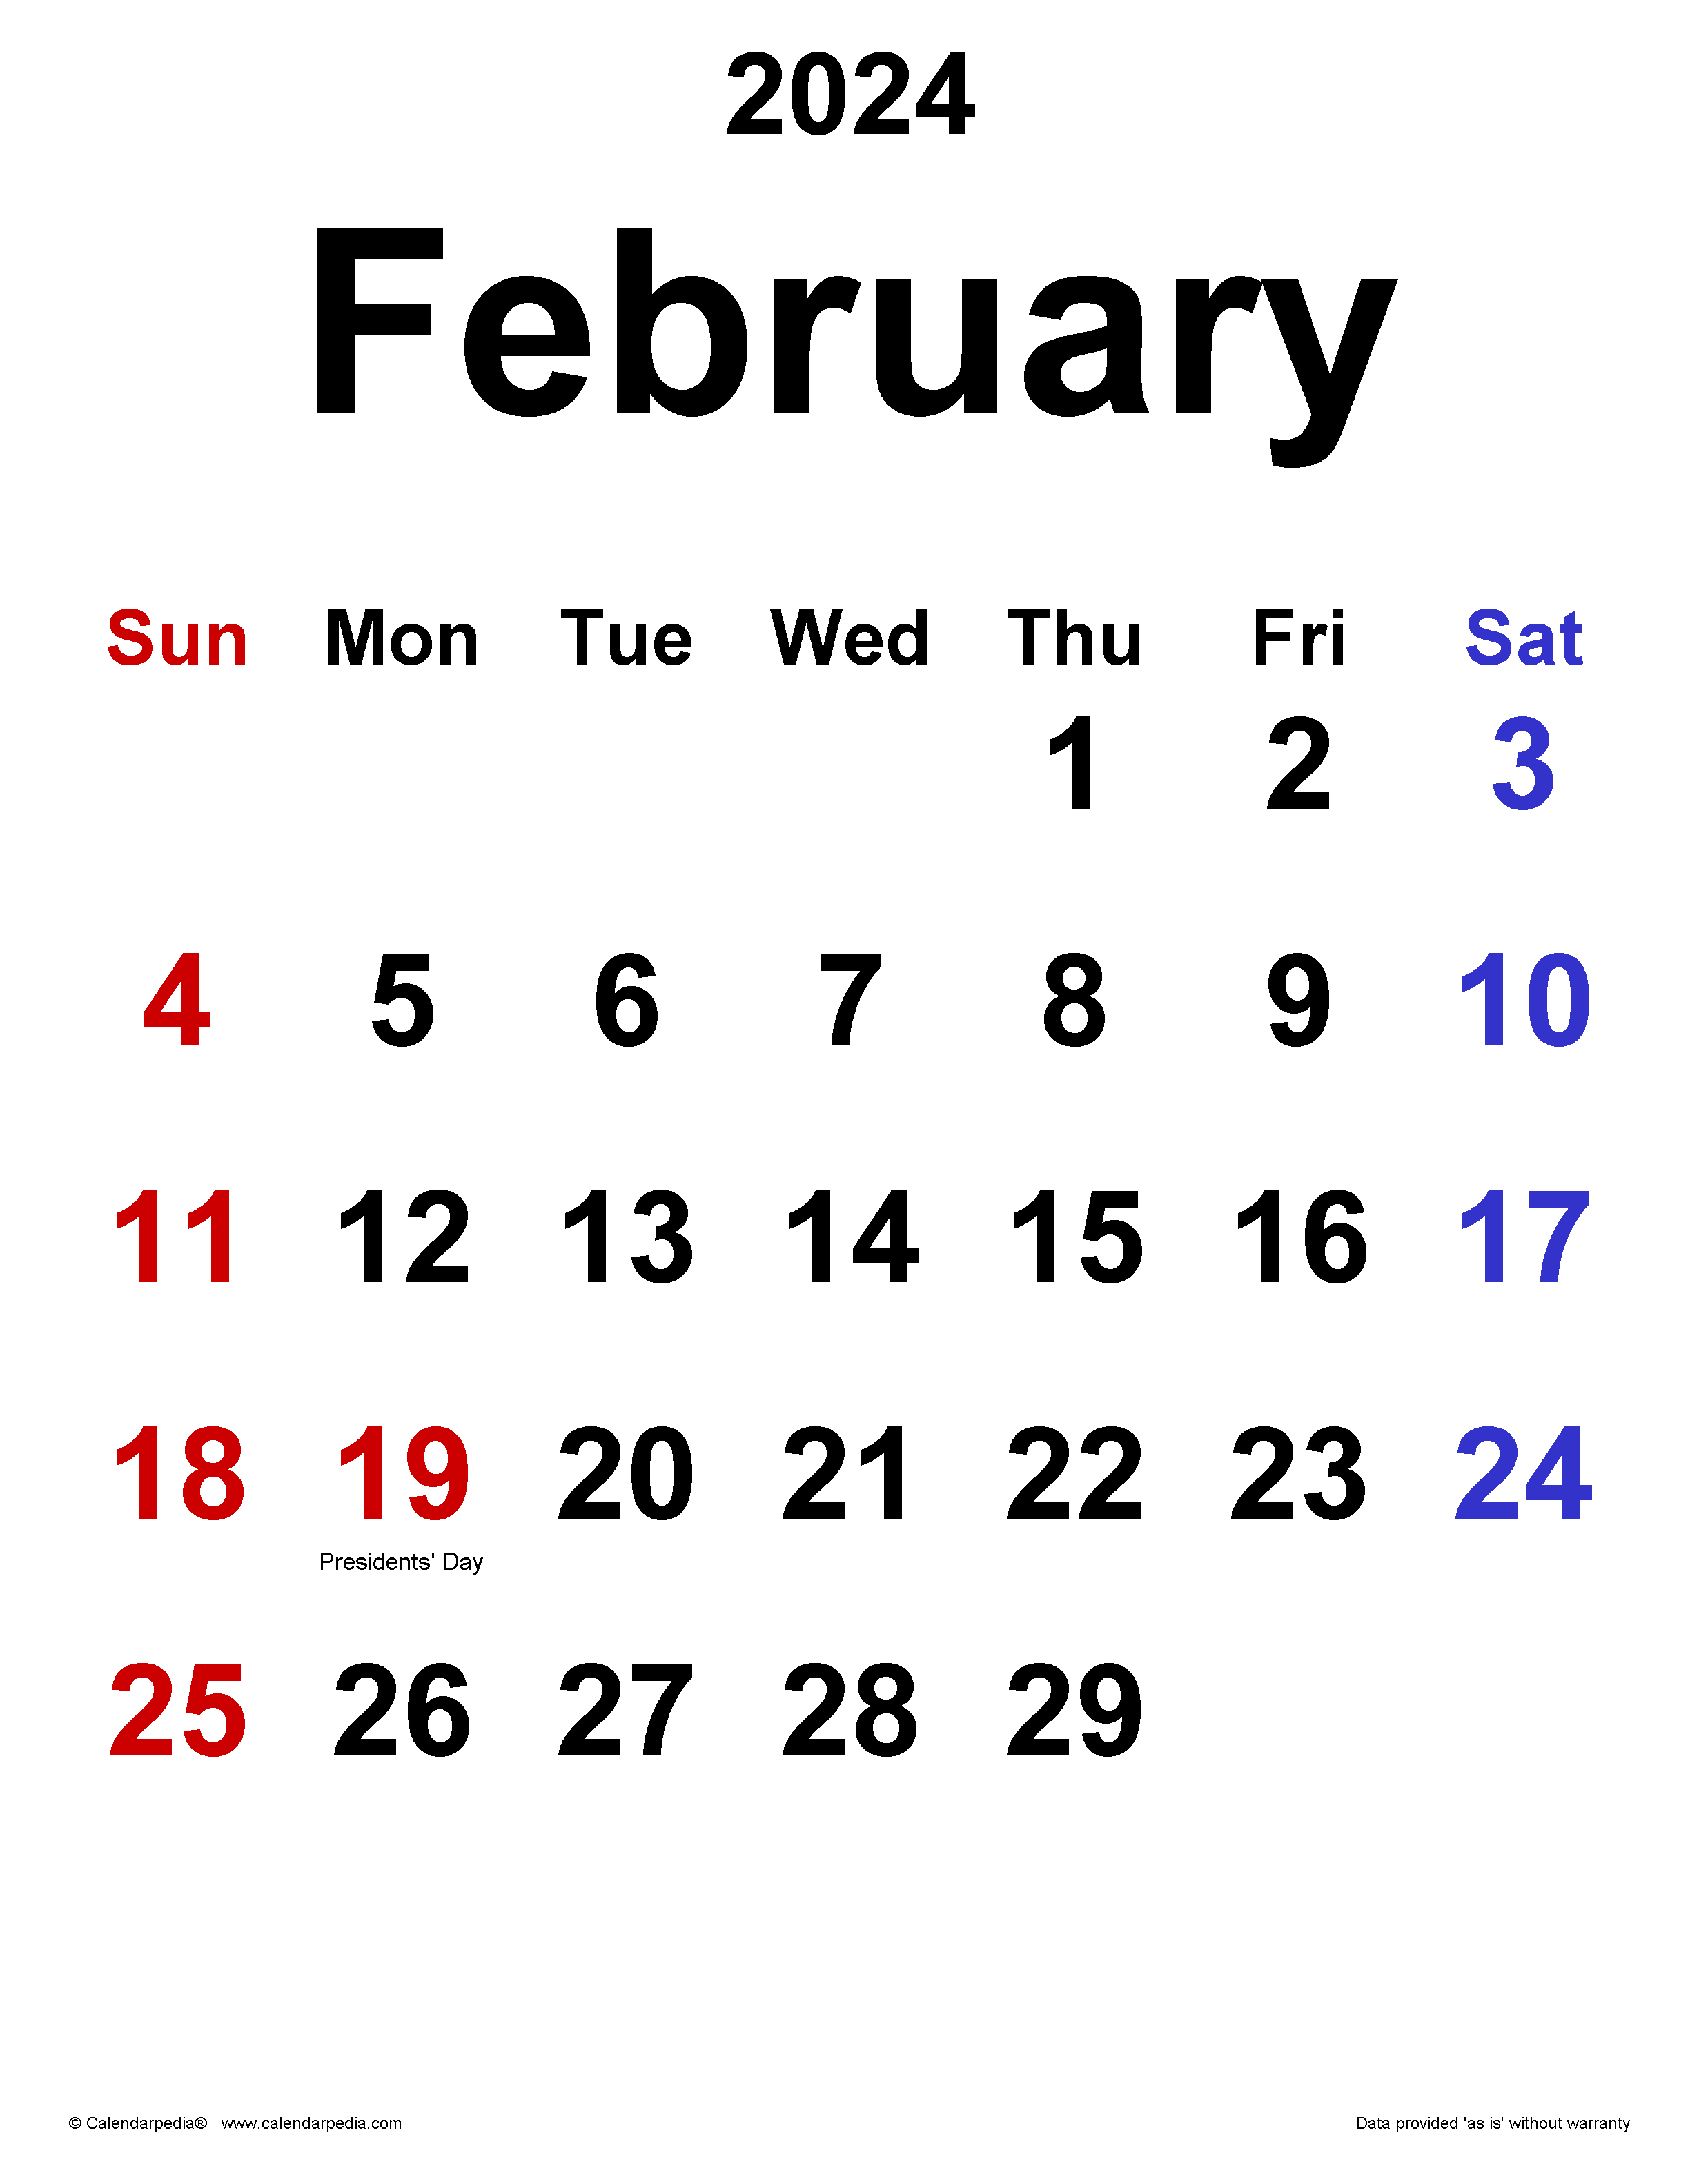 February 2024 Calendar - Free Printable 2024 February Calendar